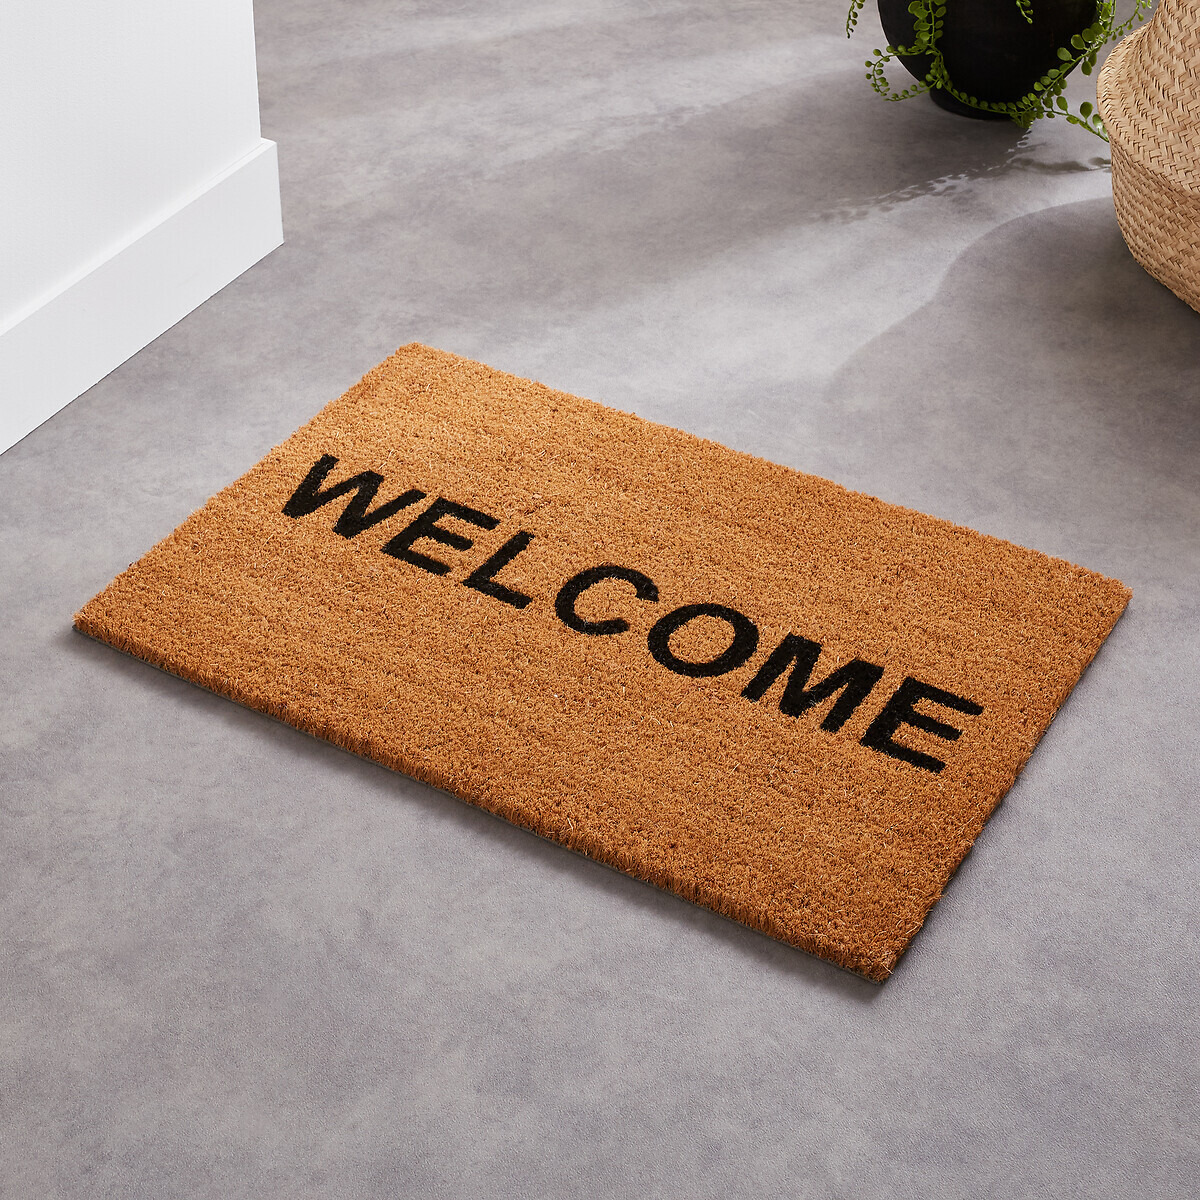 Thiam Welcome Doormat - image 1